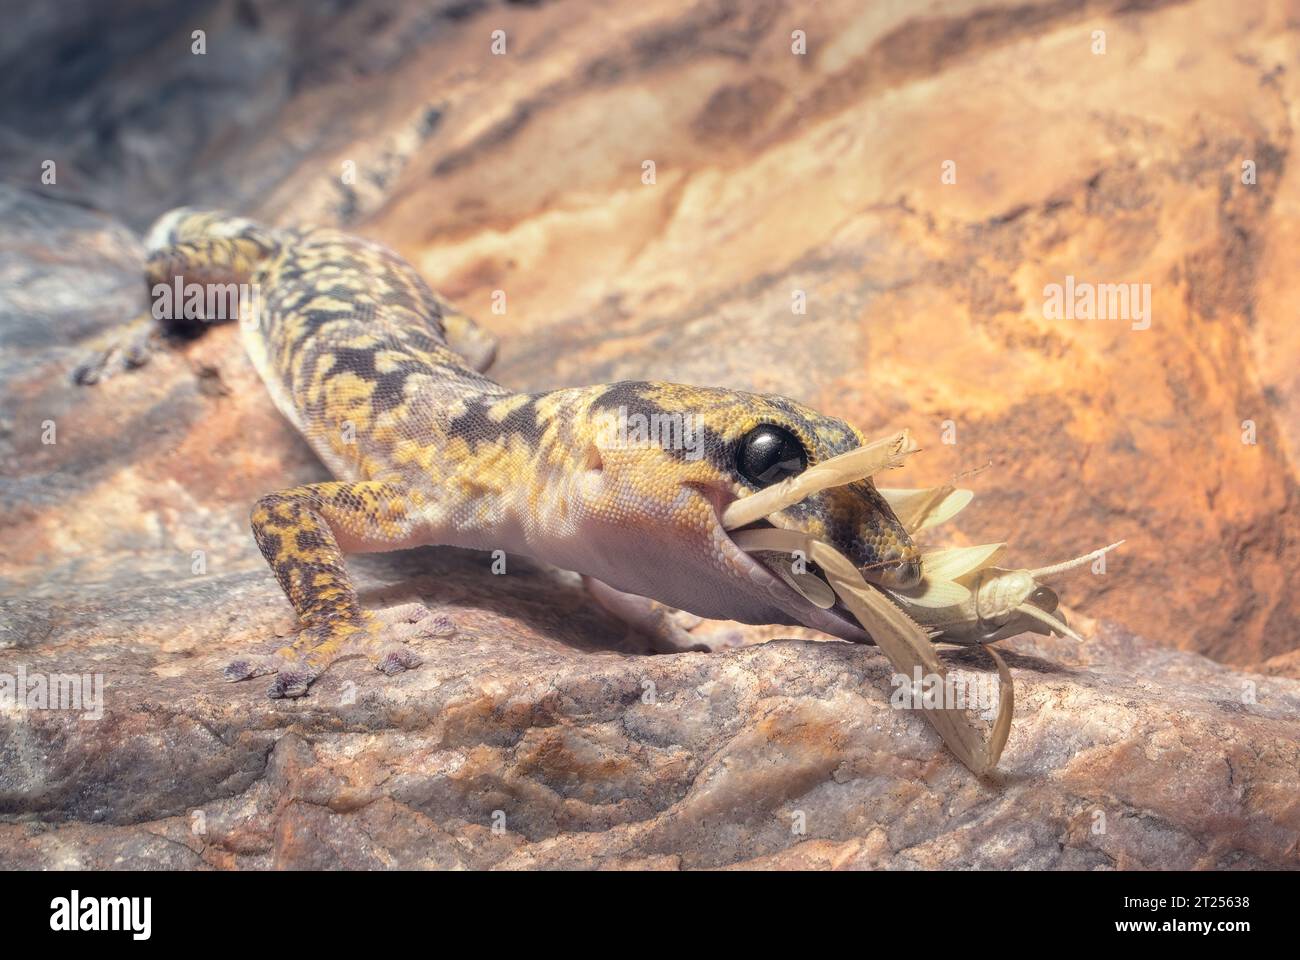 Gecko sauvage de velours marbré (Oedura cincta) mangeant une mante sur une paroi rocheuse la nuit, Australie Banque D'Images